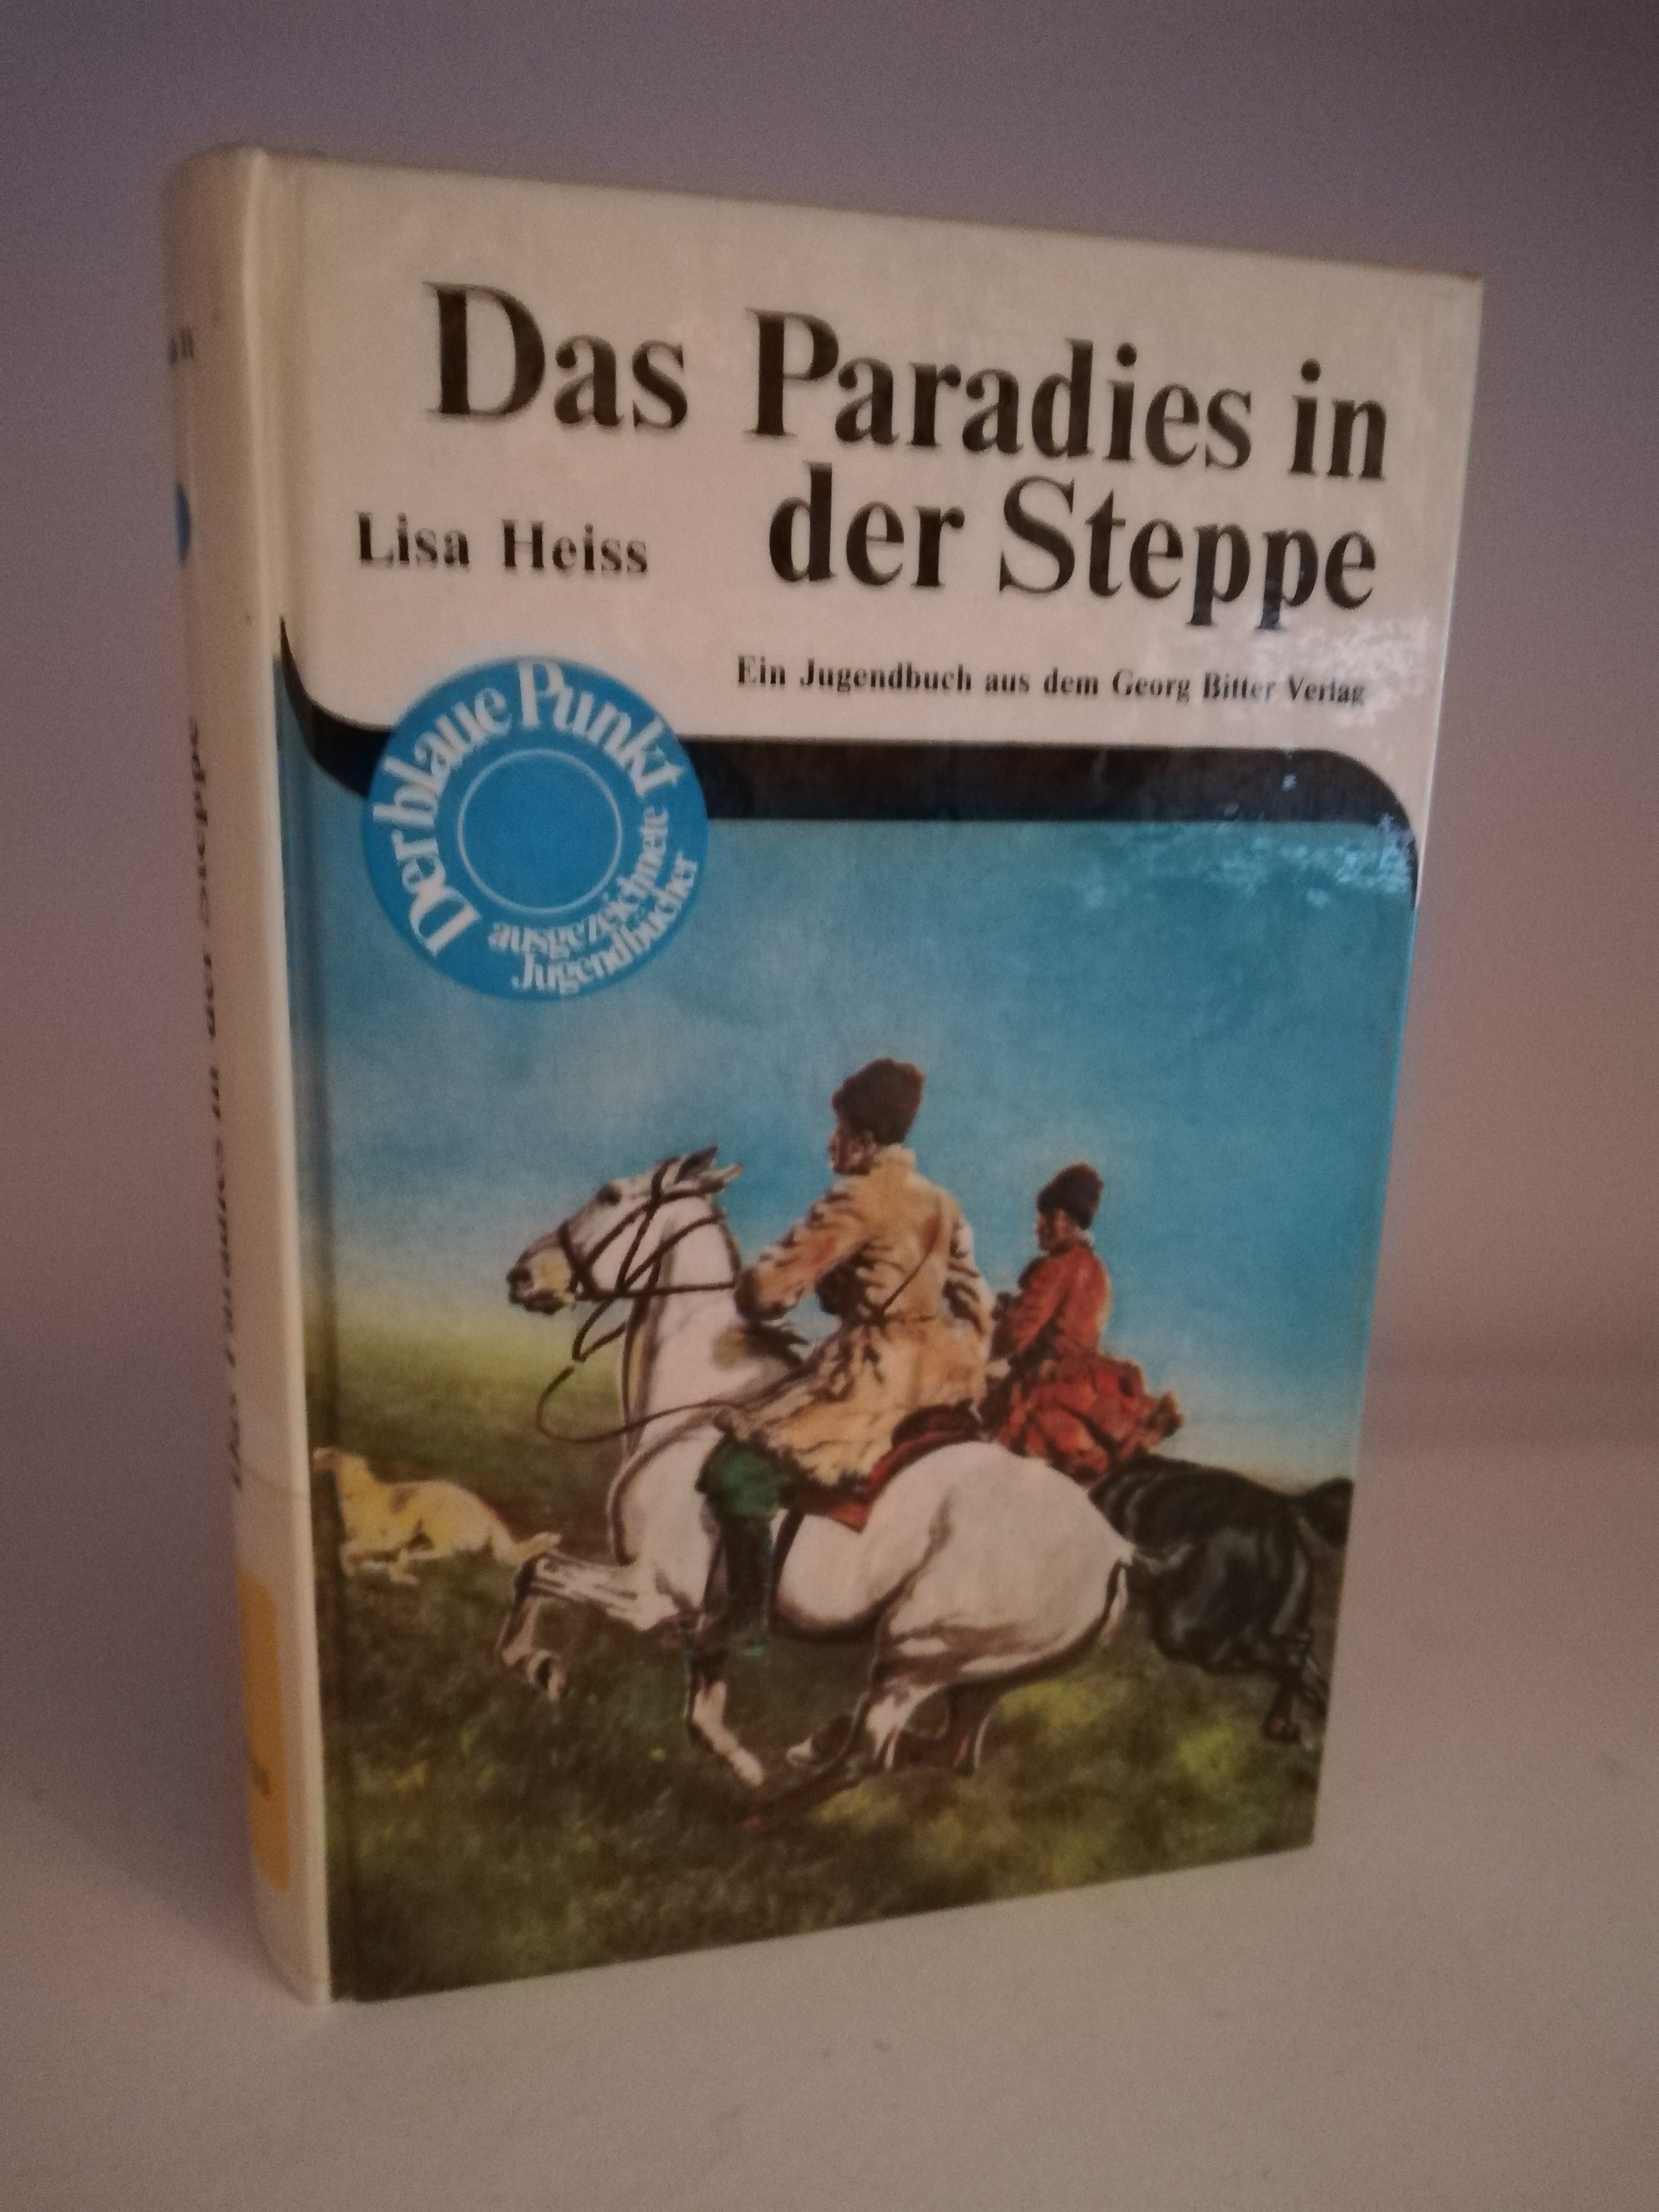 Lisa Heiss  Das Paradies in der Steppe. Der abenteuerliche Weg nach Askania Nova. Ein Jugendbuch aus dem Georg Bitter Verlag 